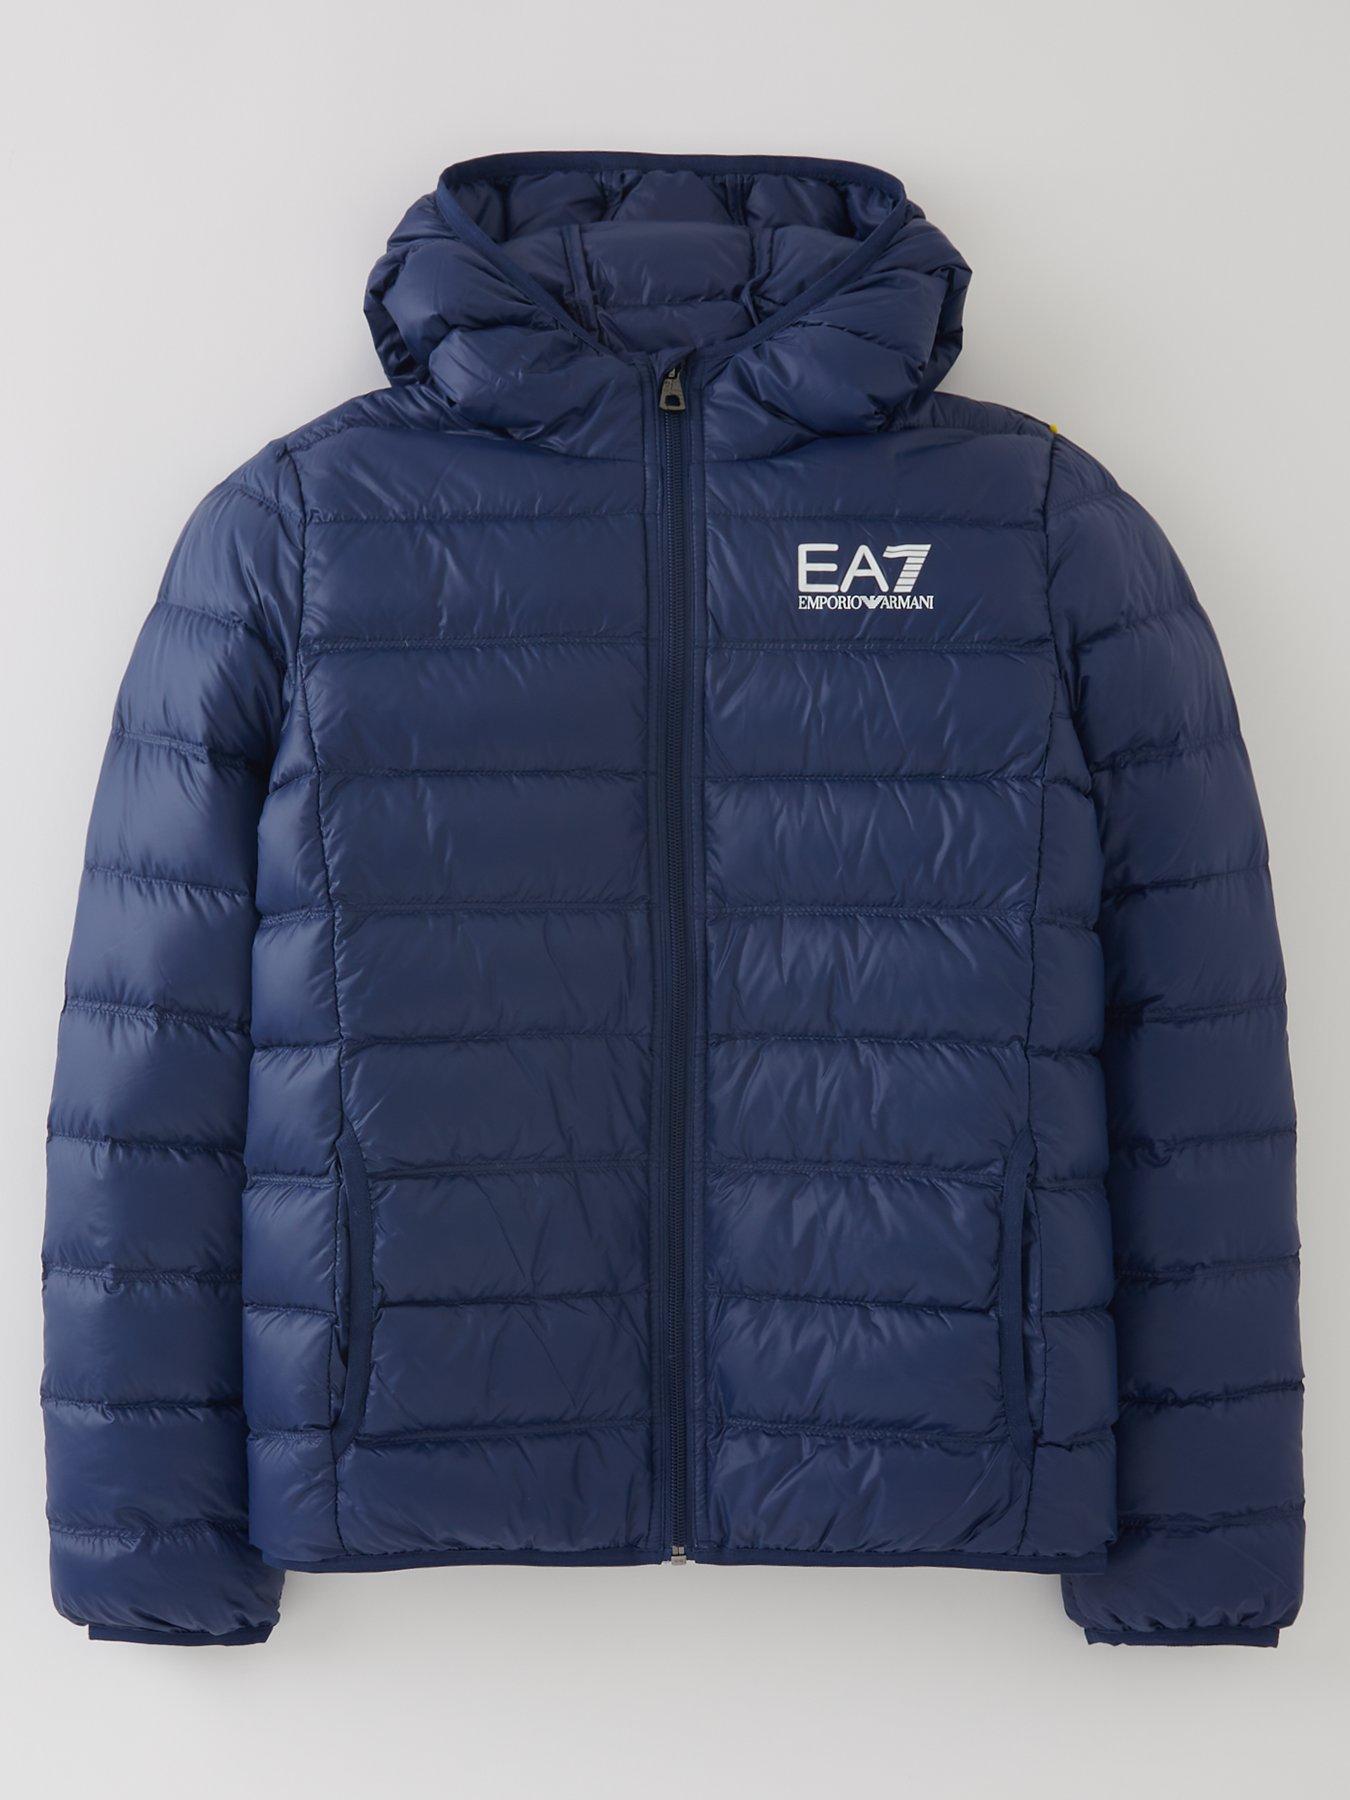 Ea7 emporio armani | Coats & jackets | Boys clothes | Child & baby |  